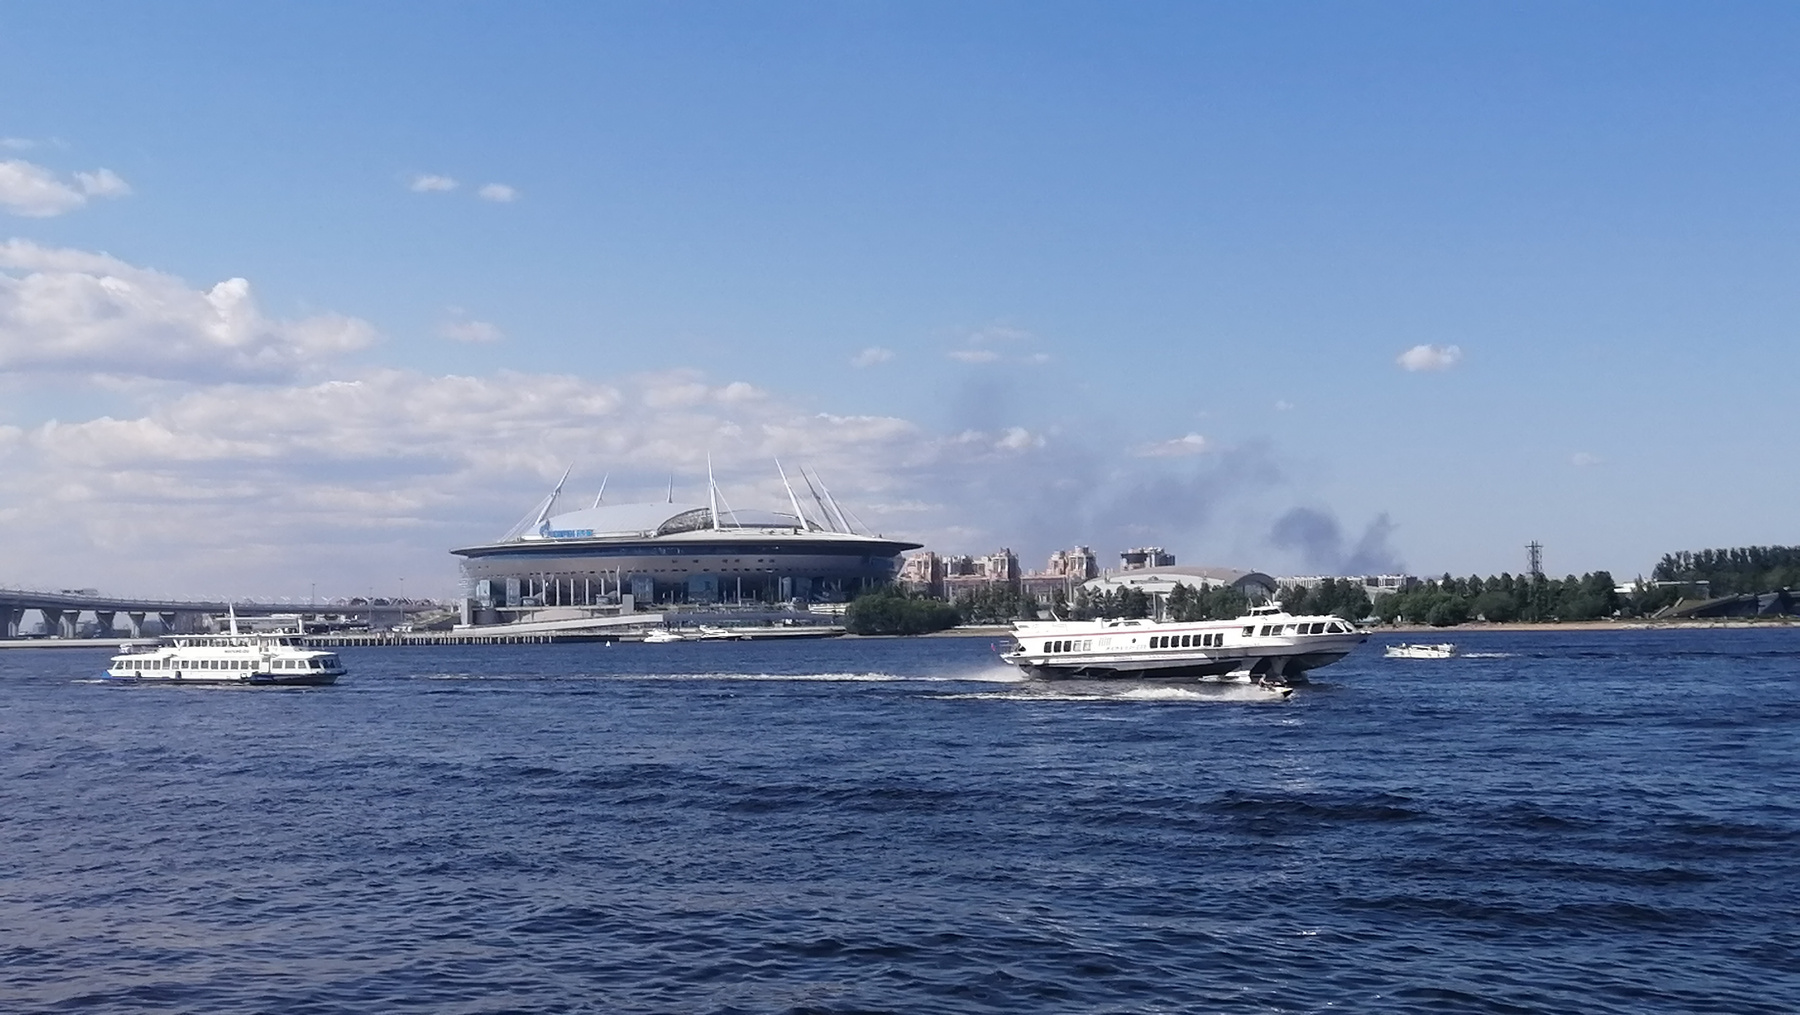 Июньский Стадион Санкт-Петербург Санкт-Петербург стадион 2021 лето евро футбол спорт достопримечательности